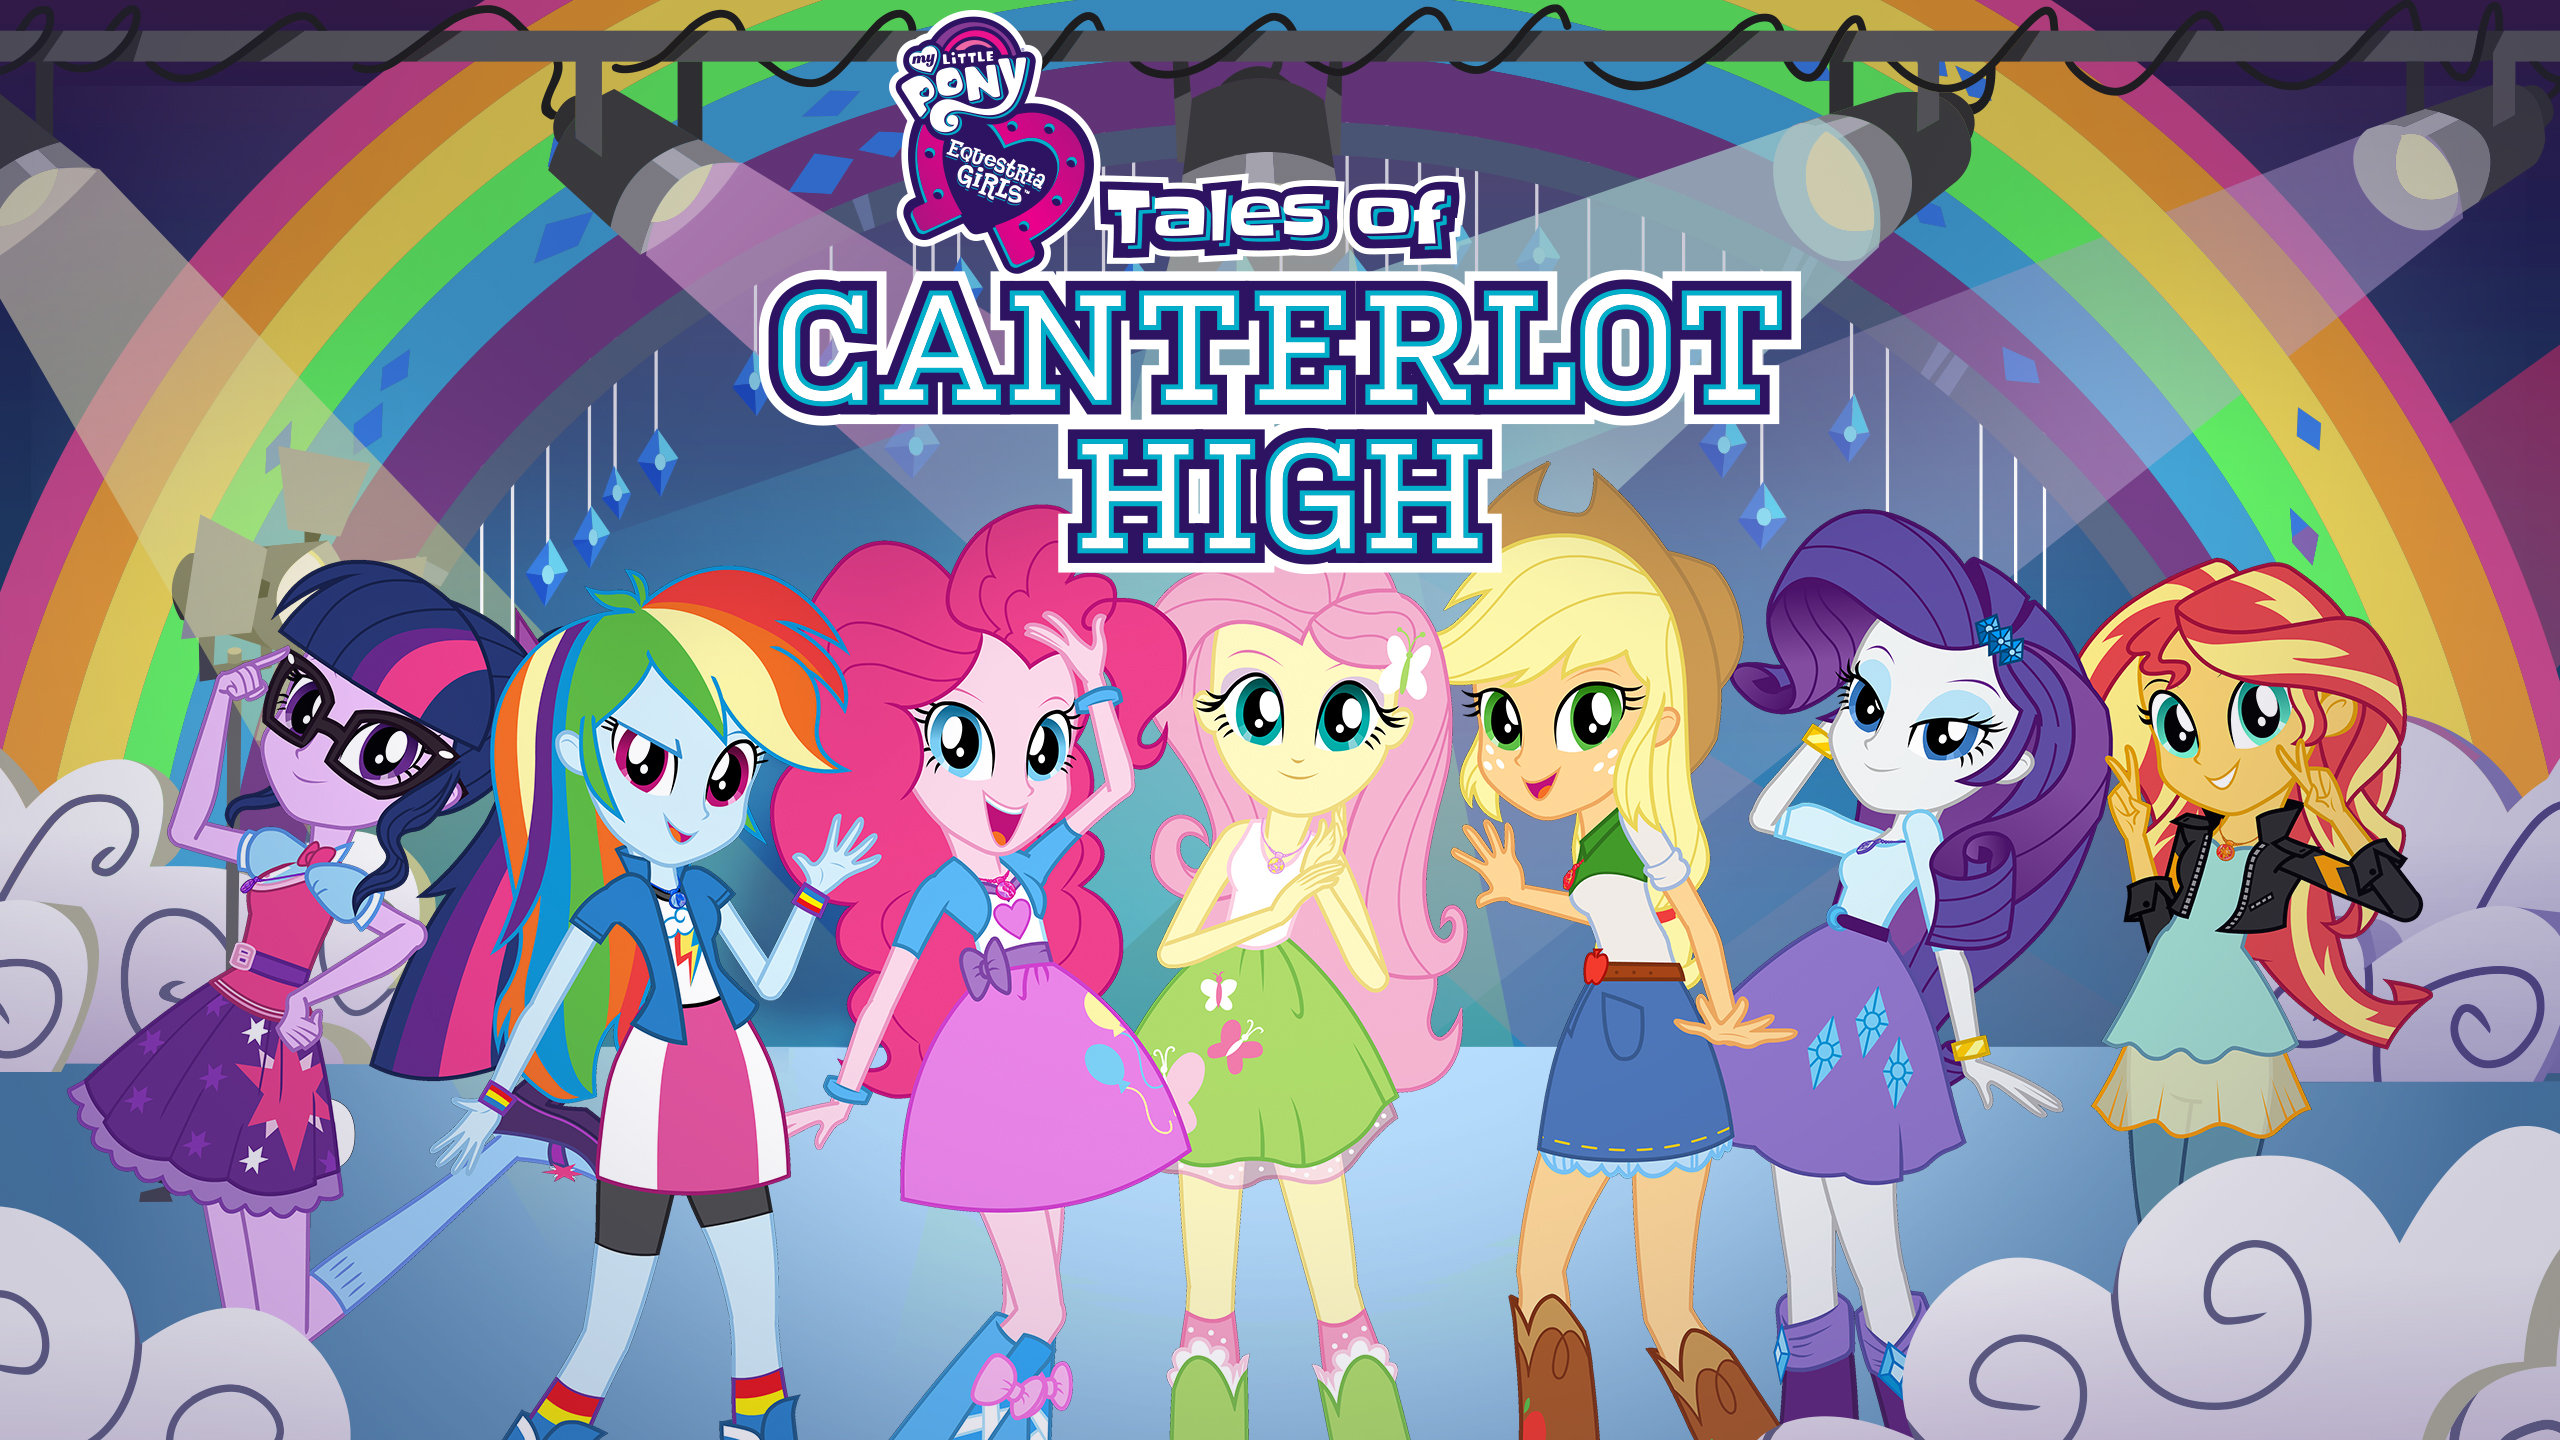 Скачать обои My Little Pony: Девочки Из Эквестрии Tales Of Canterlot High на телефон бесплатно